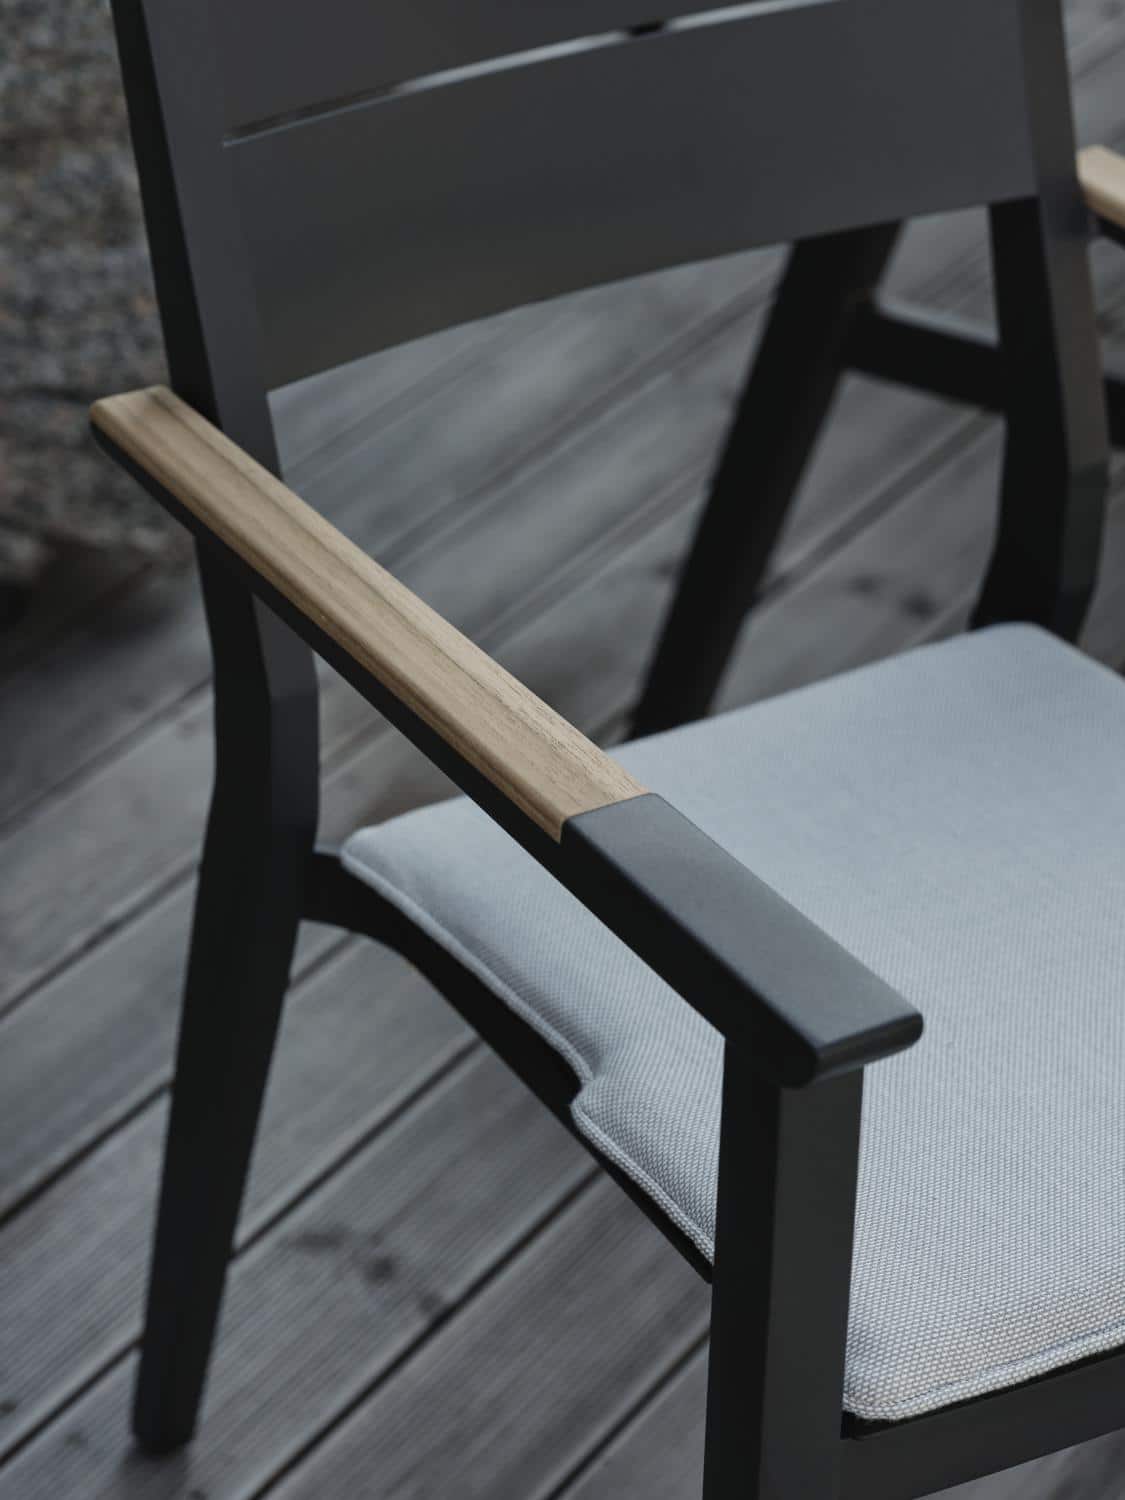 Brafab Chios Karmstol svart är en stapelbar matstol i aluminium och har formade armstöd med infälld teak. Måttanpassad sittdyna i askfärgad akryl ingår.